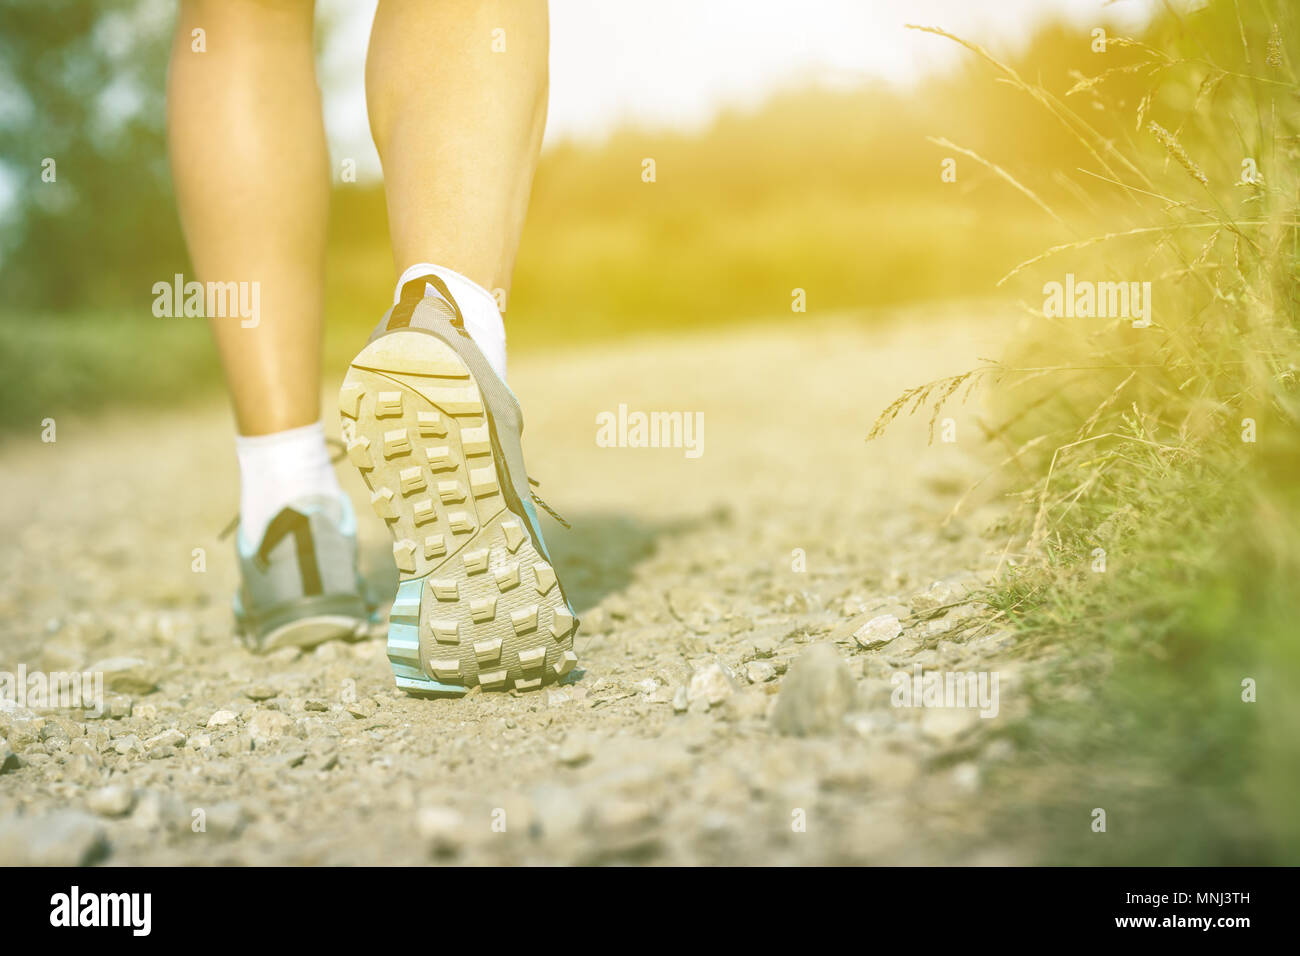 Frau im Sport oder Wandern Schuhe. Joggen, Wandern oder training draußen im Sommer Natur, inspirierenden, motivierenden Gesundheits- und Fitness-Konzept. Stockfoto